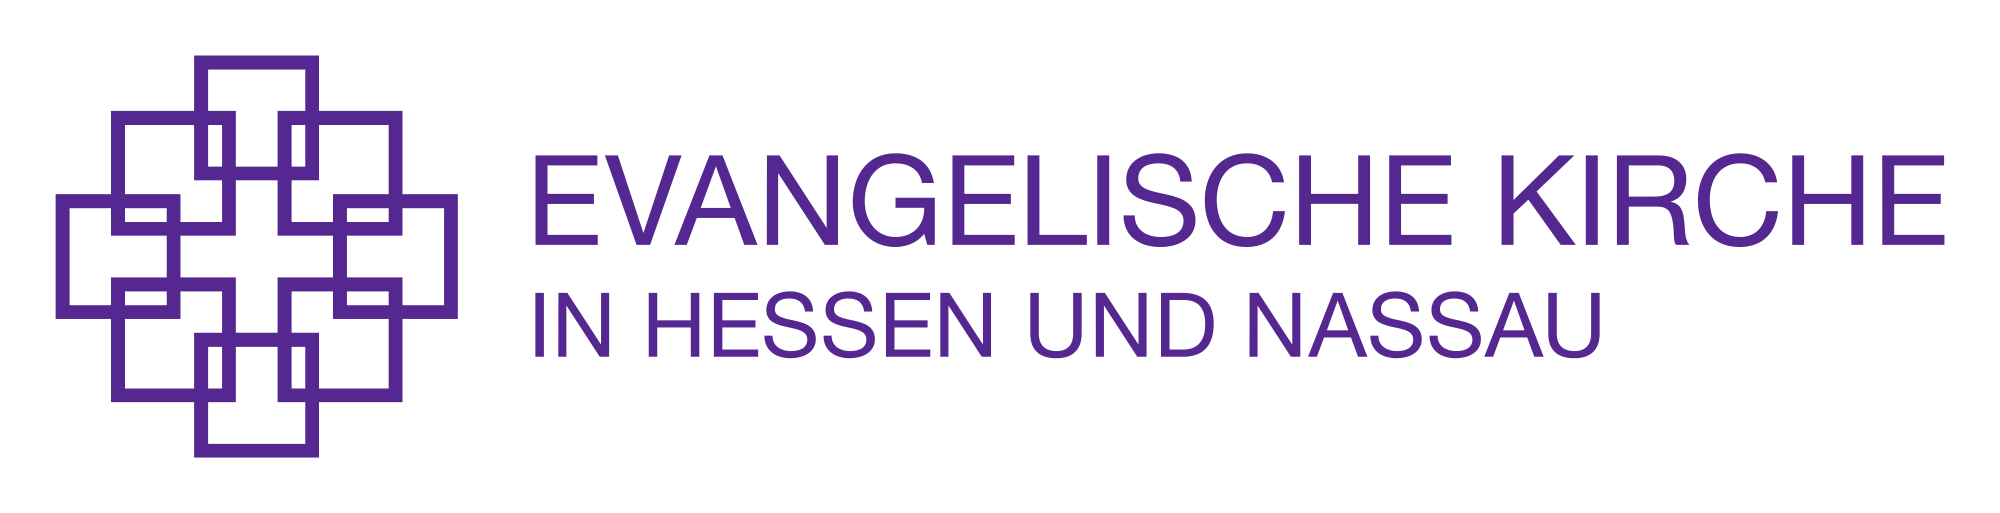 Evangelische Kirche Logo